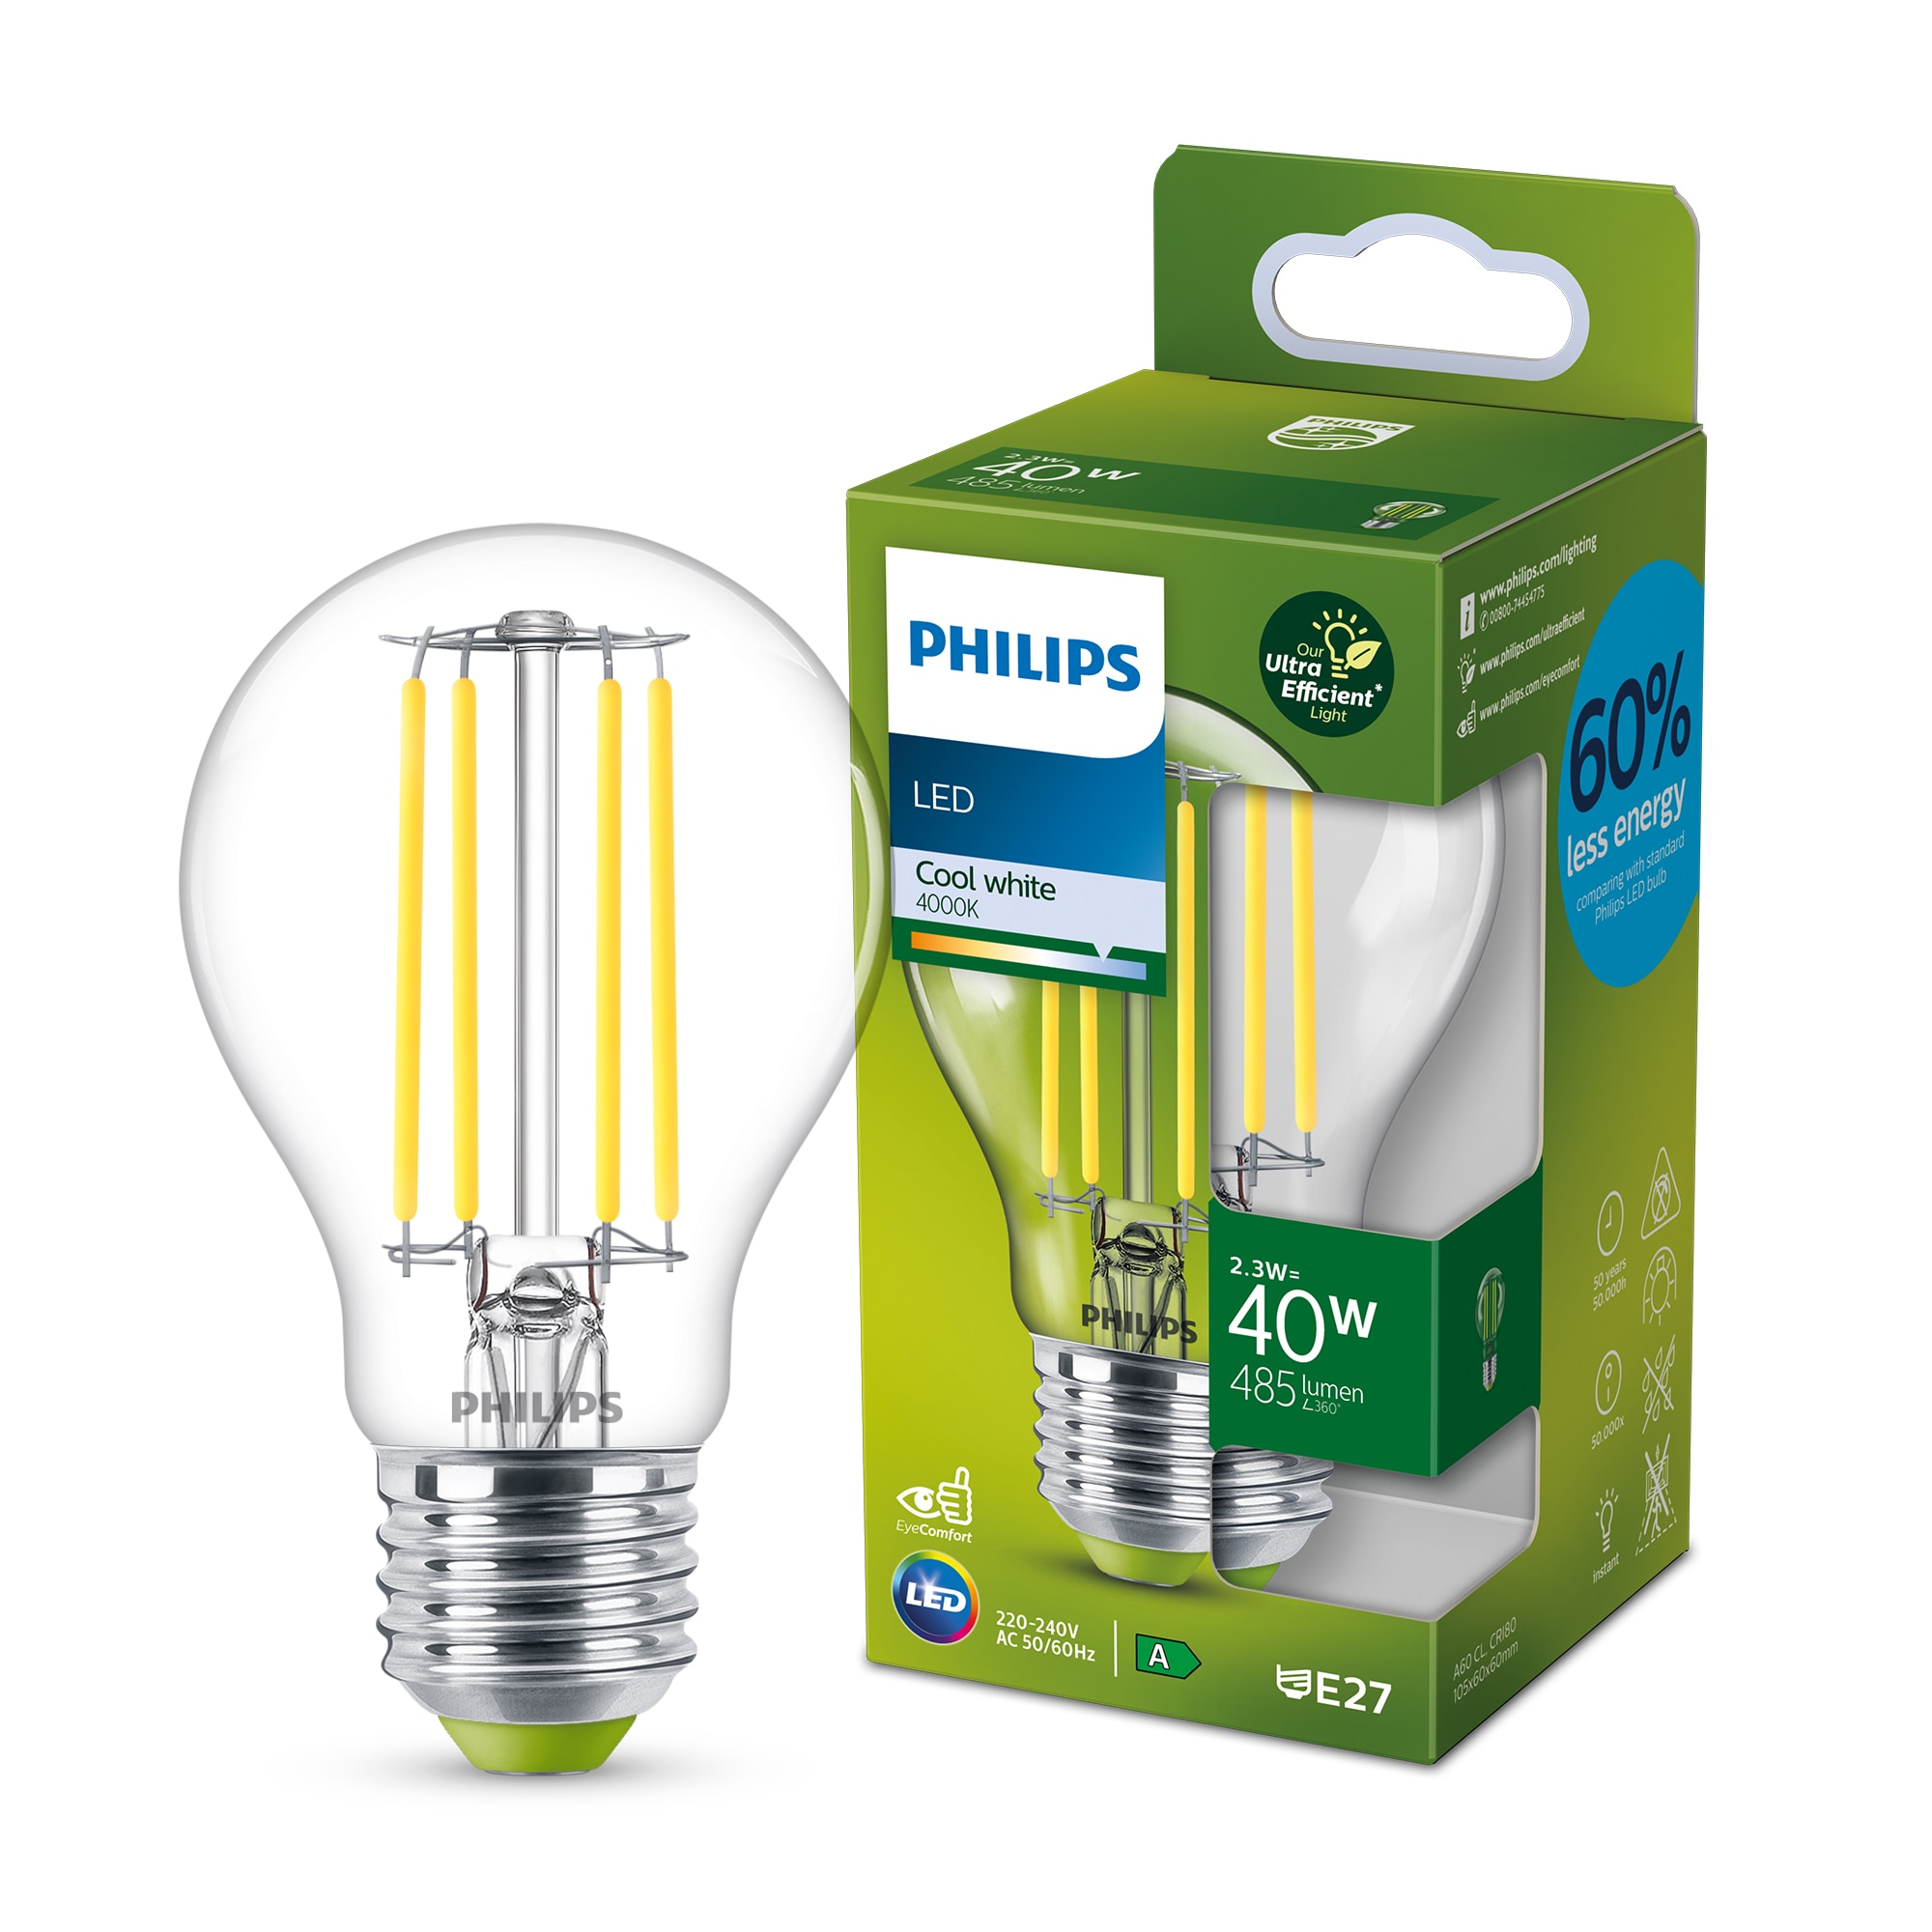 Stressvol Dom staan De meest energiezuinige Philips LED A-klasse lampen | Signify  Bedrijfswebsite